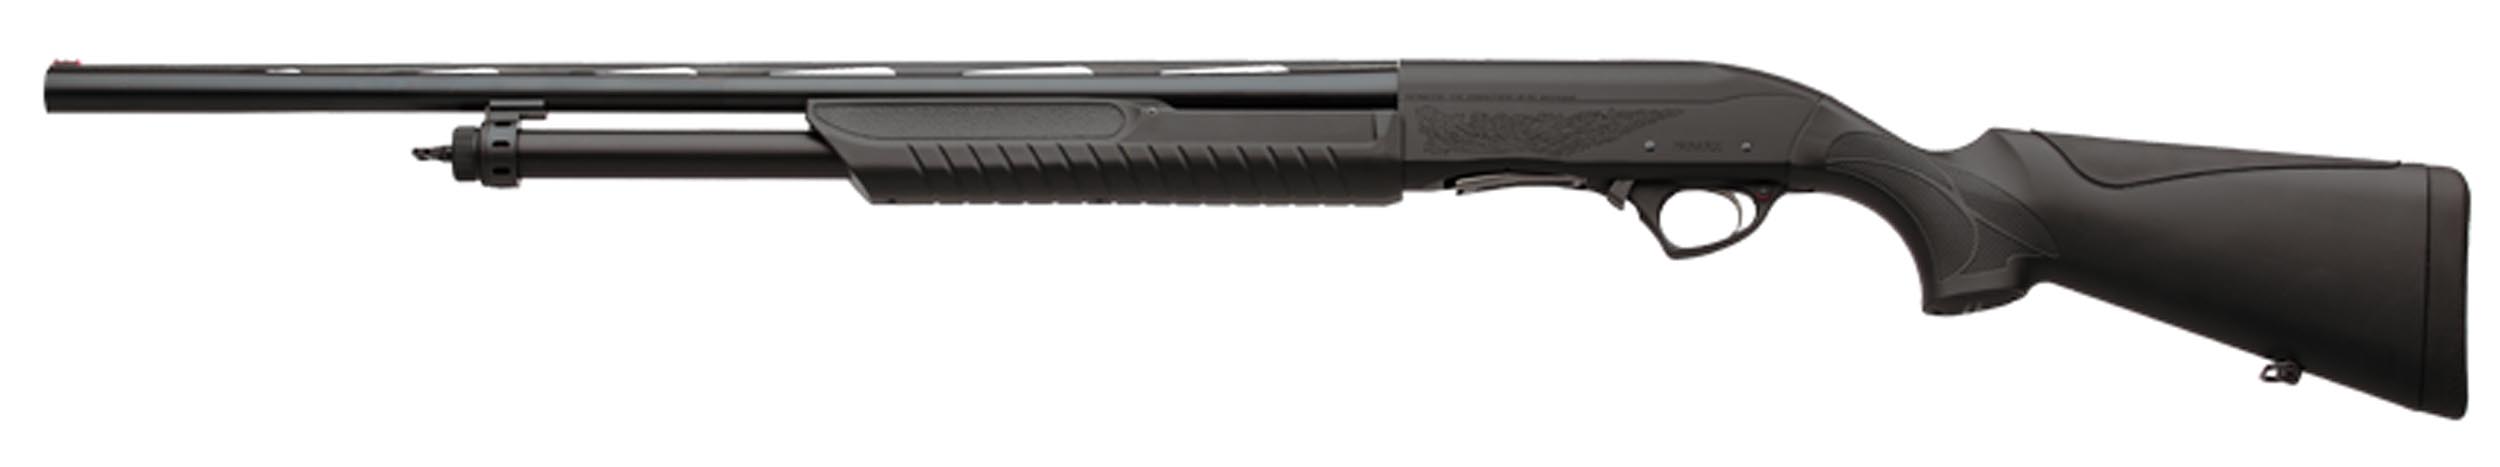 FA2001-02 Fusil à pompe calibre 12 SDASS 2 Chasse Composite